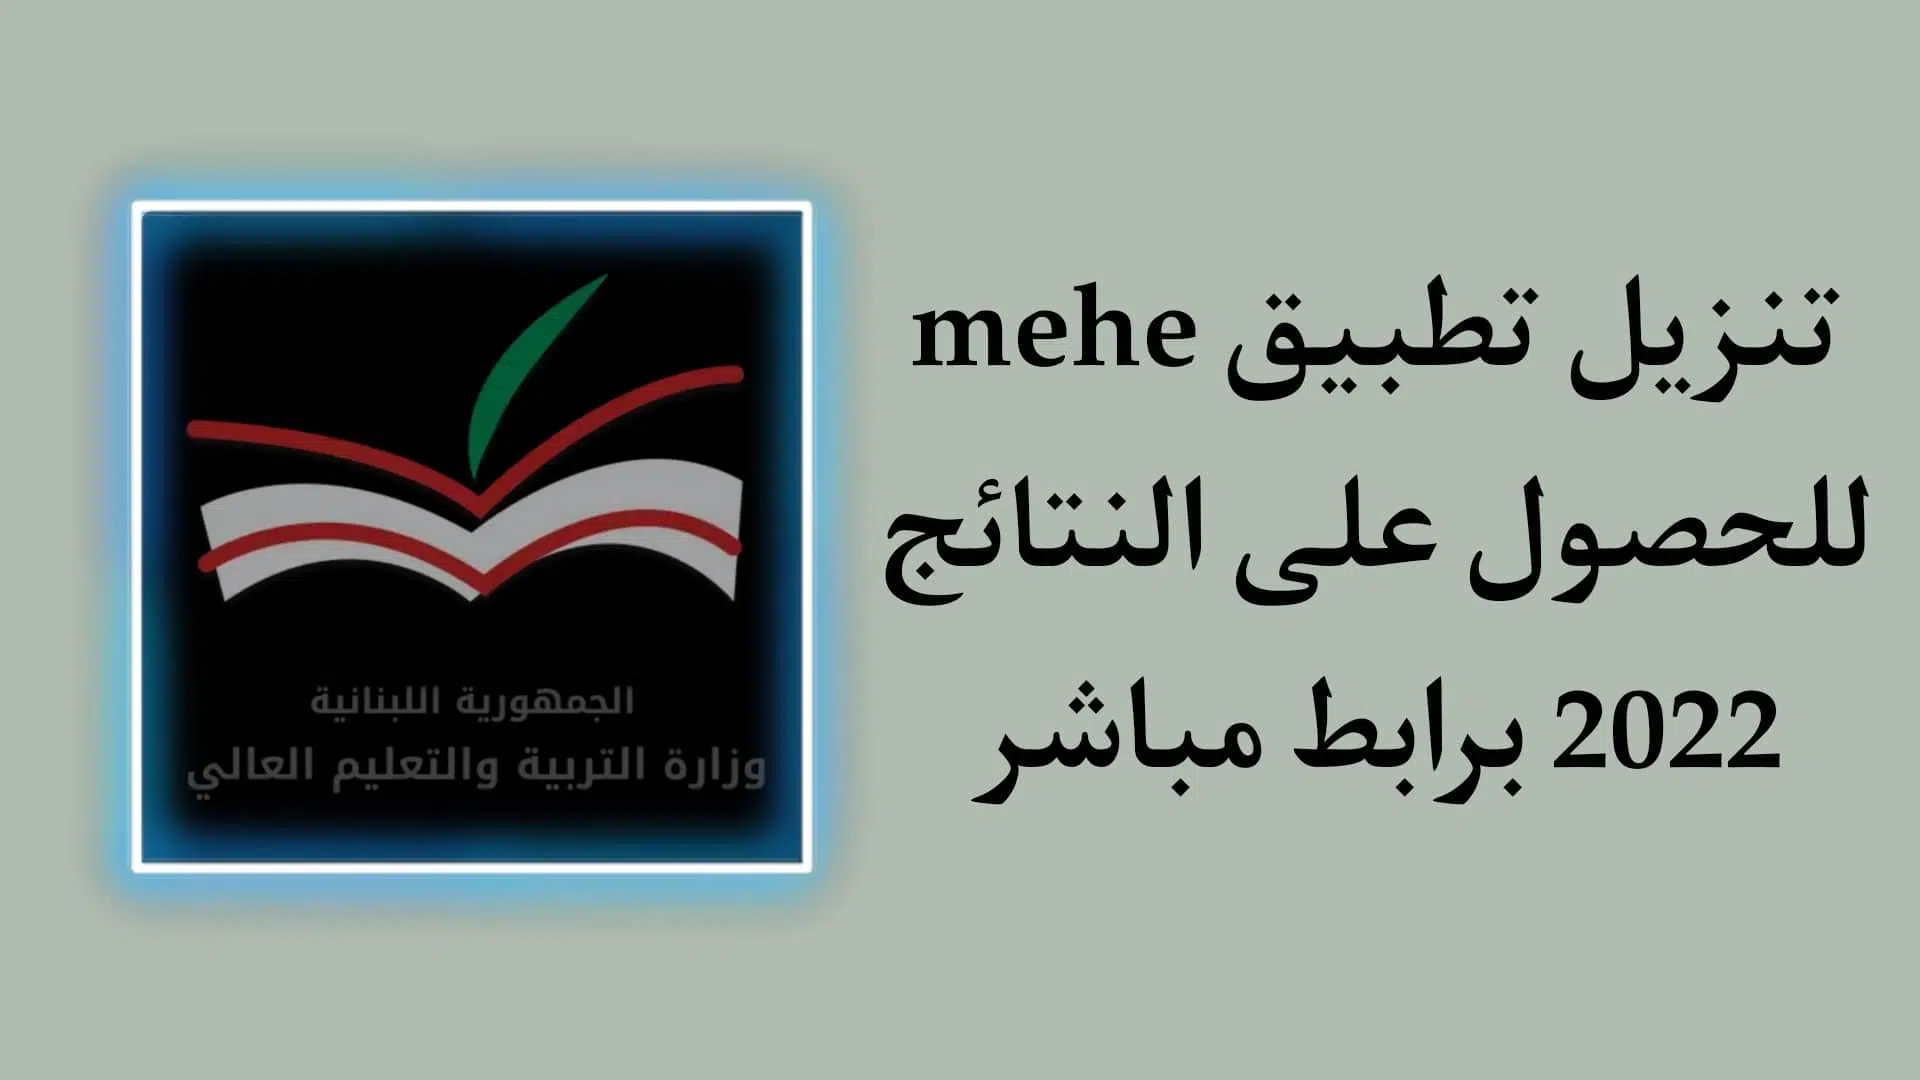 تنزيل تطبيق MEHE للحصول علي النتائج - وزارة التربية والتعليم